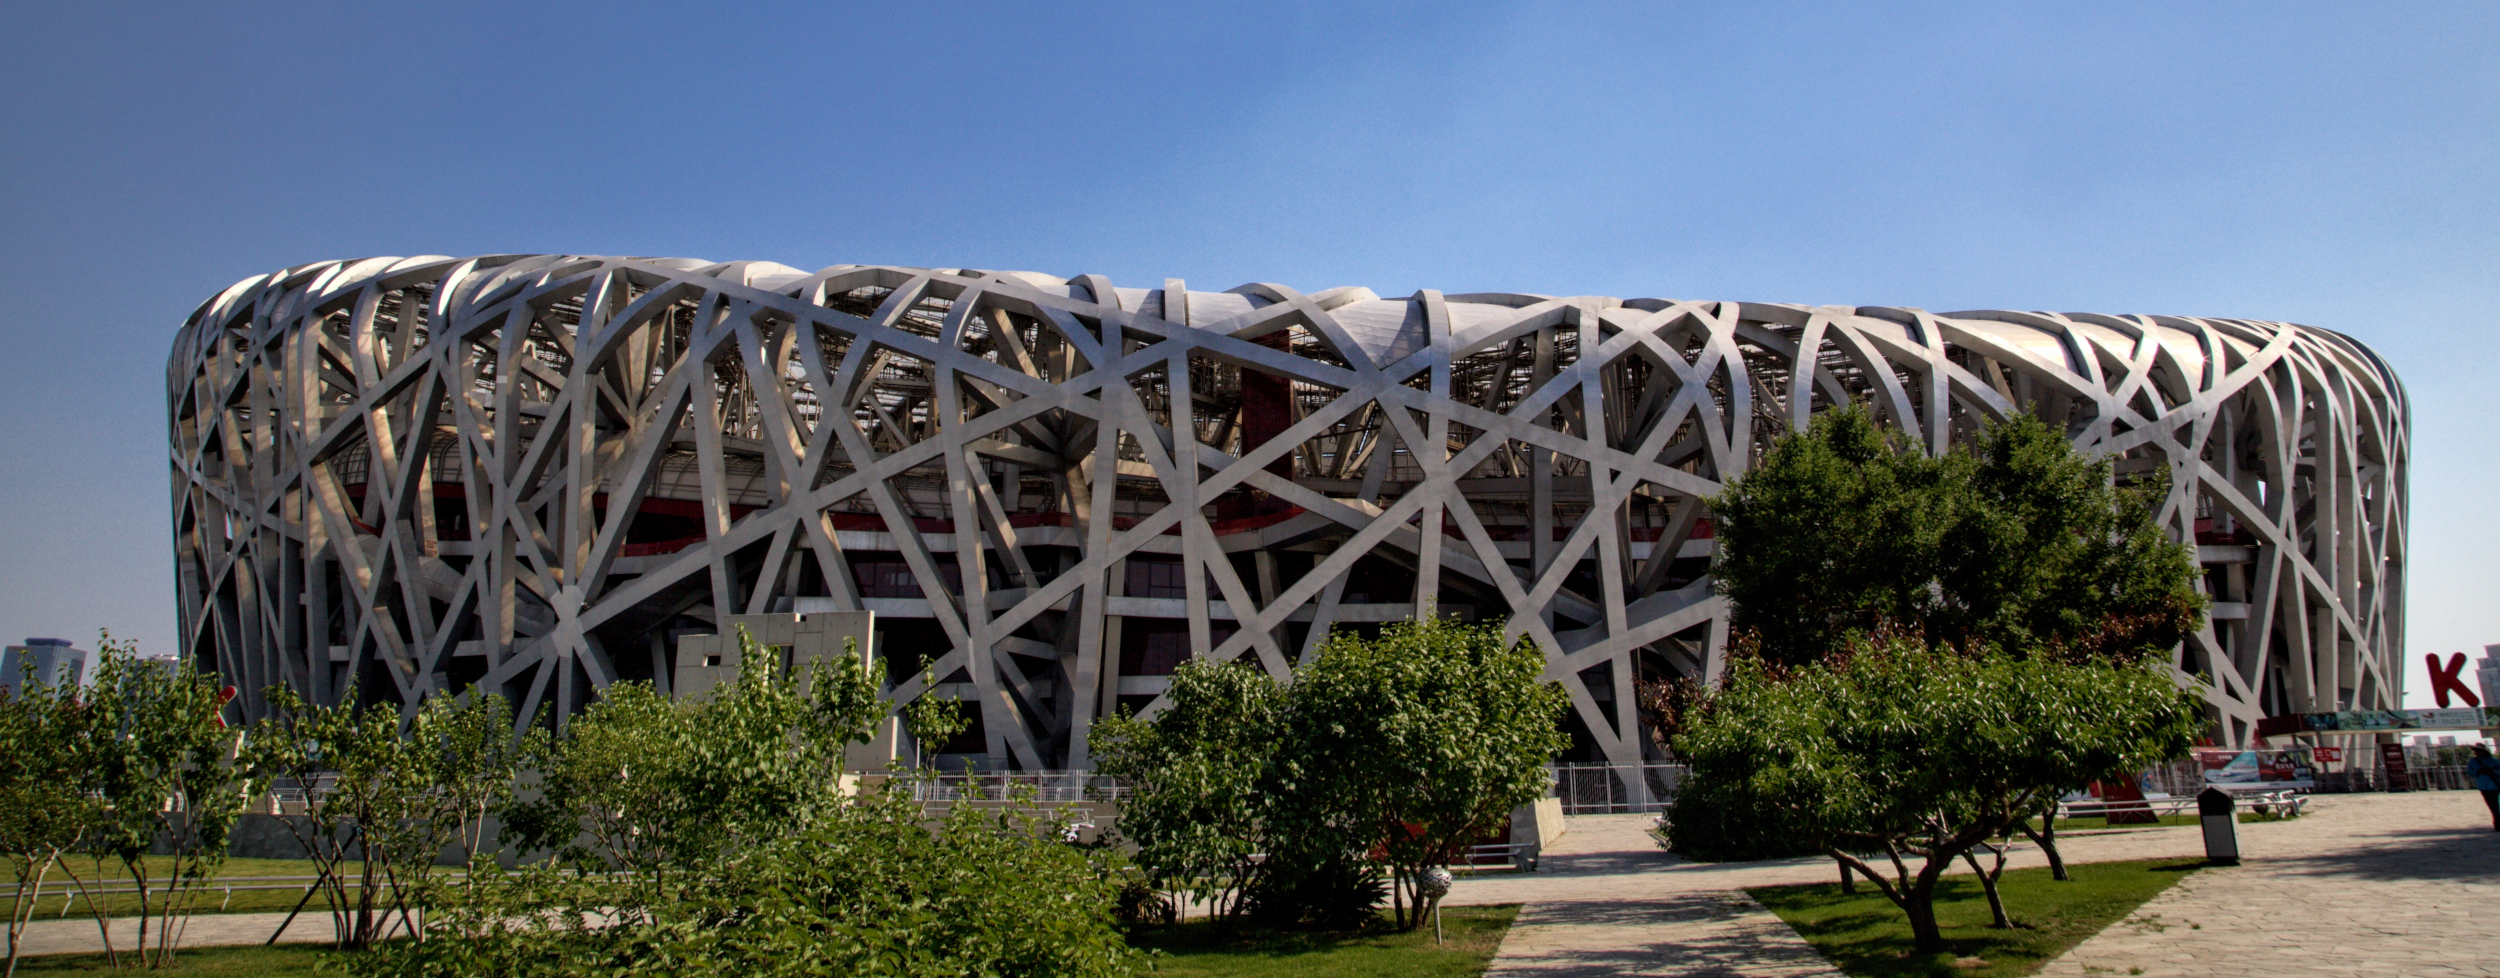 Estadio Nacional de China, el nido de pajaro olimpico en Beijing, Pekin